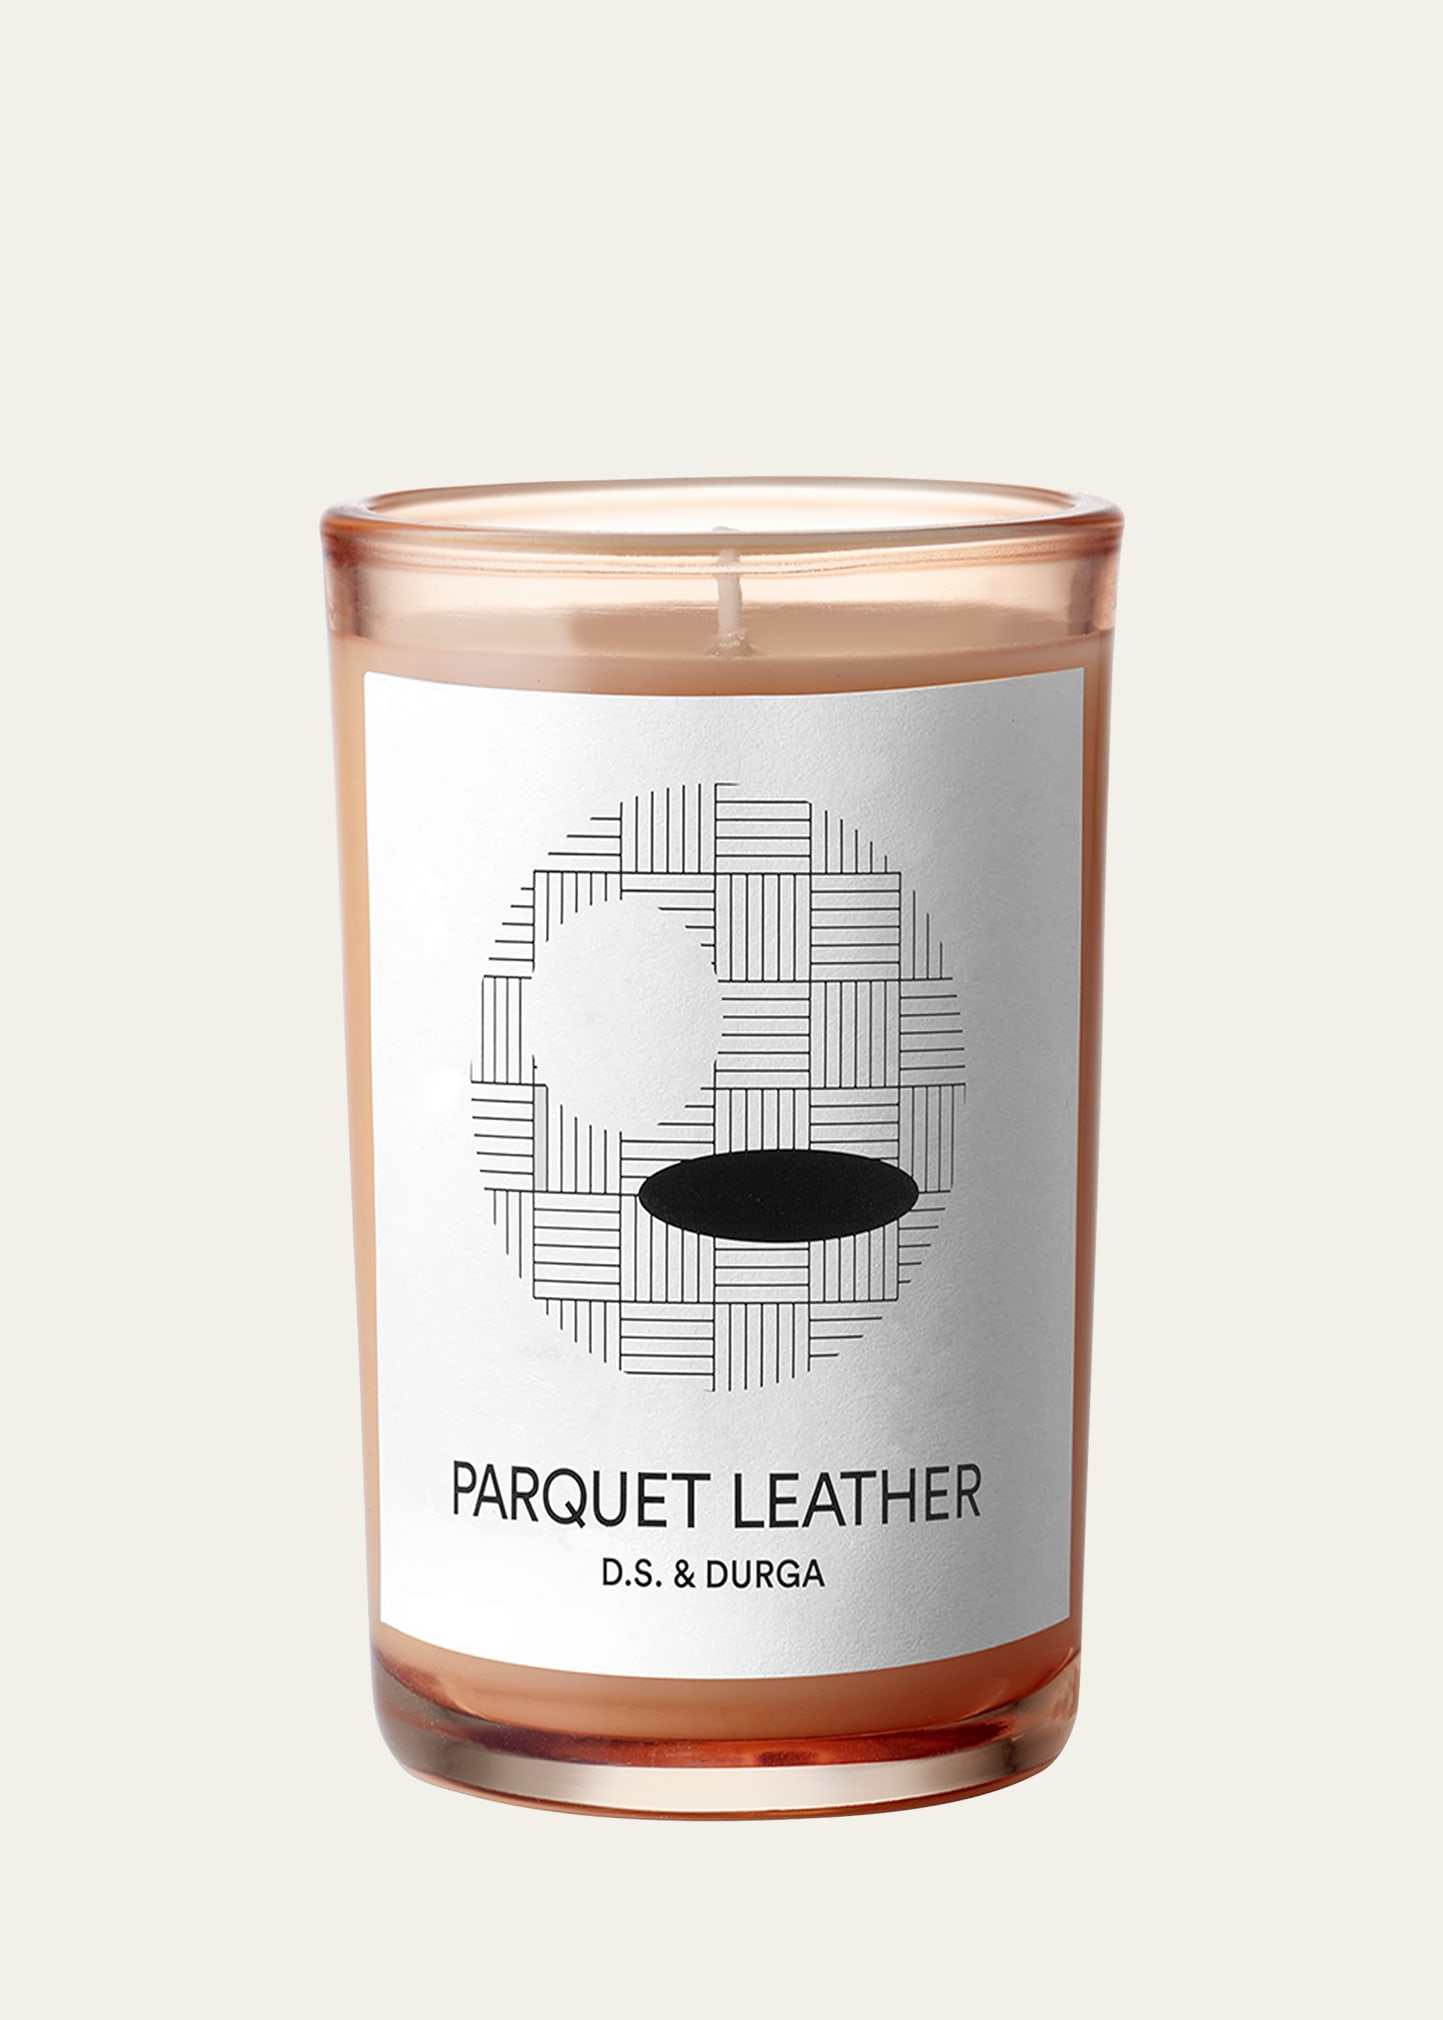 D.S. & DURGA Parquet Leather Candle, 7 oz.